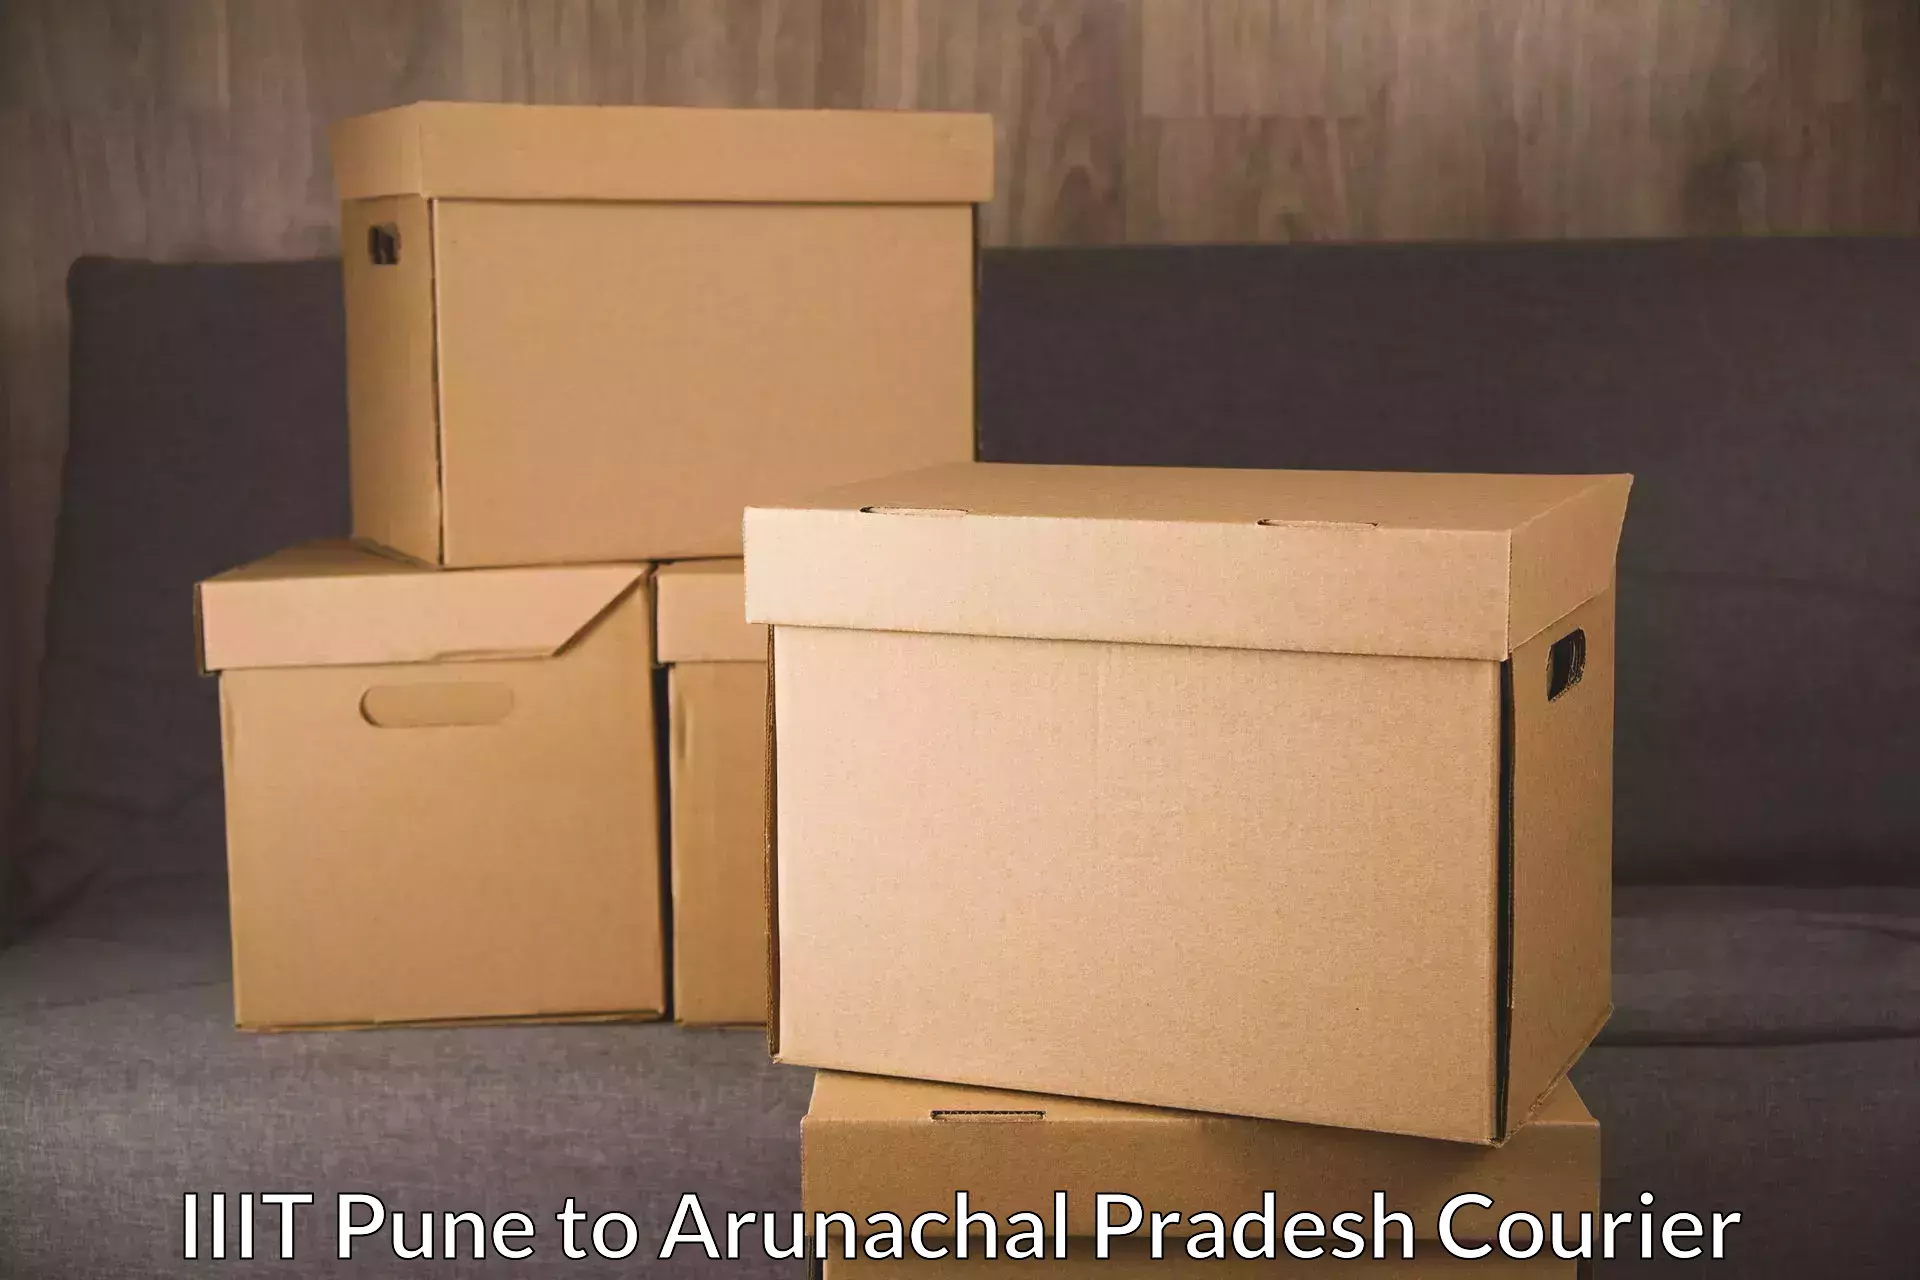 Door-to-door freight service IIIT Pune to Arunachal Pradesh